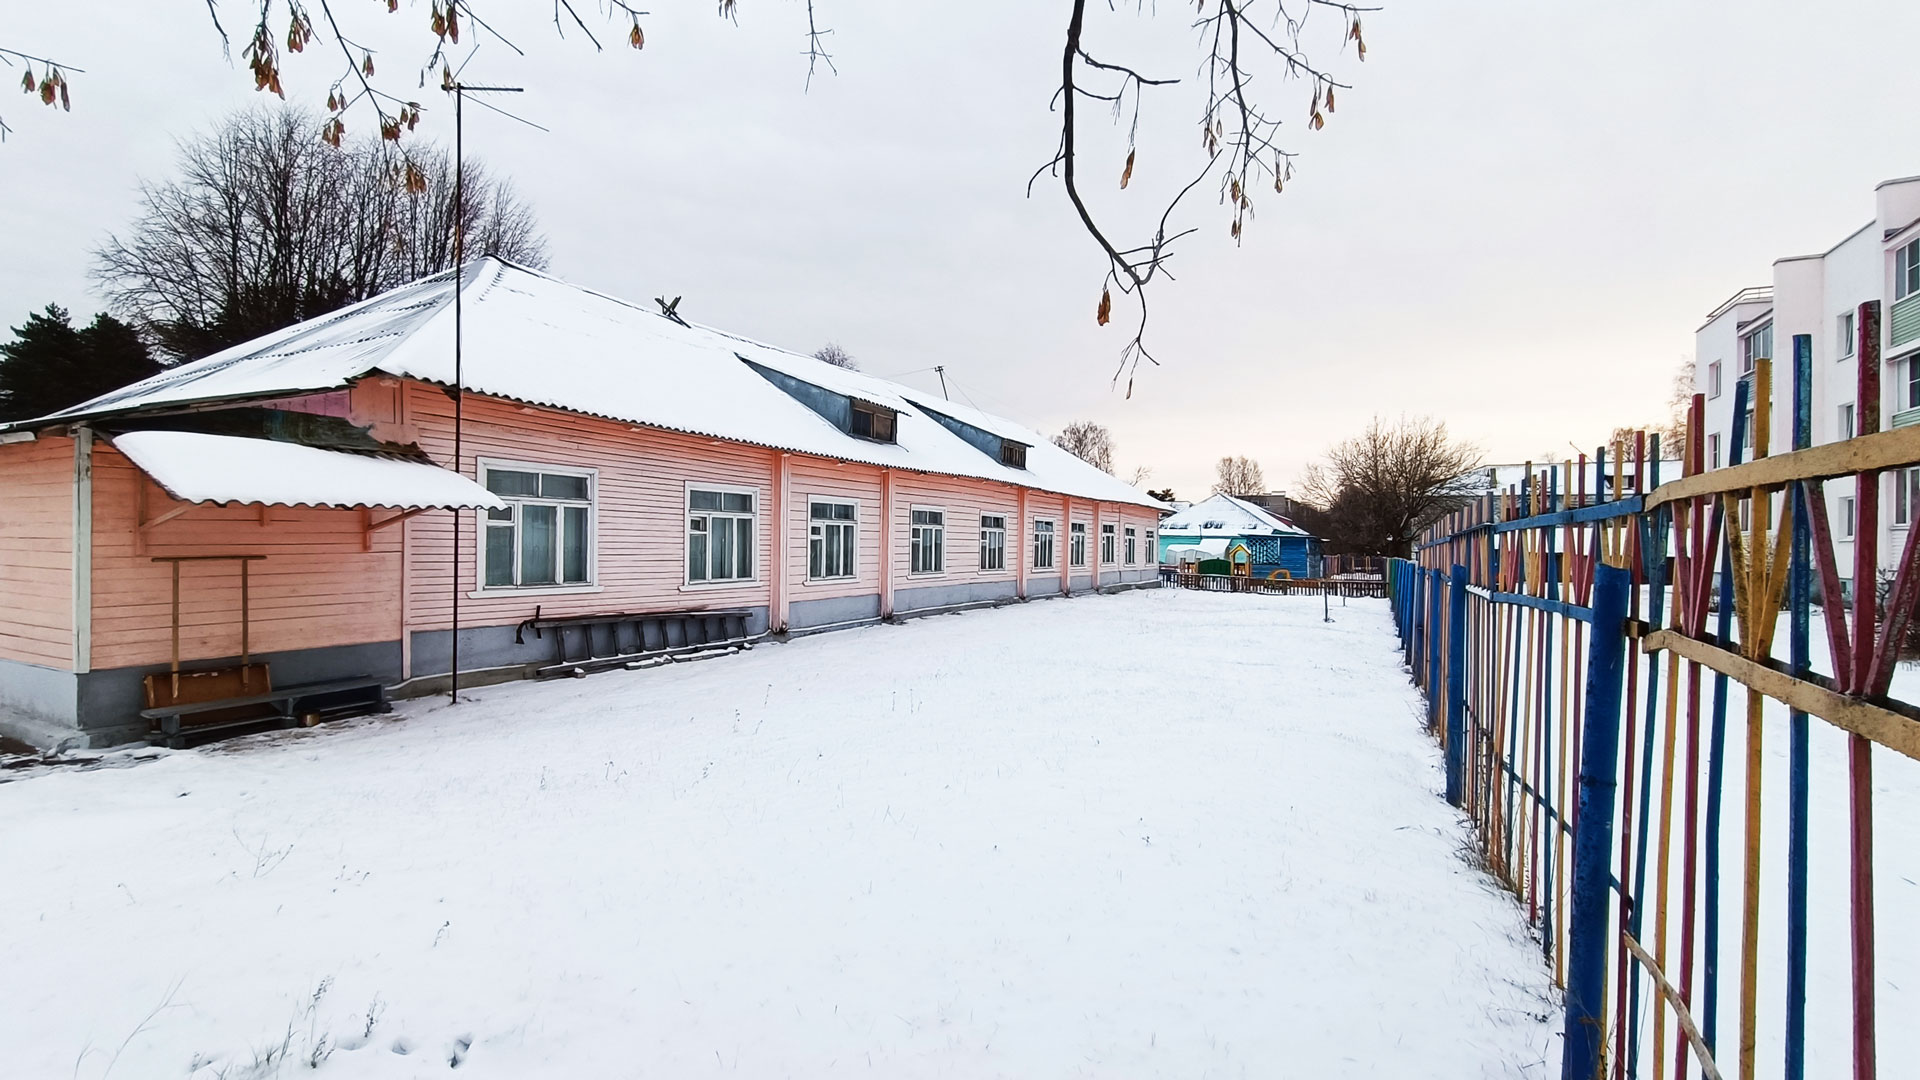 Детский сад 174 Ярославль: общий вид здания (Клубная, 10а).